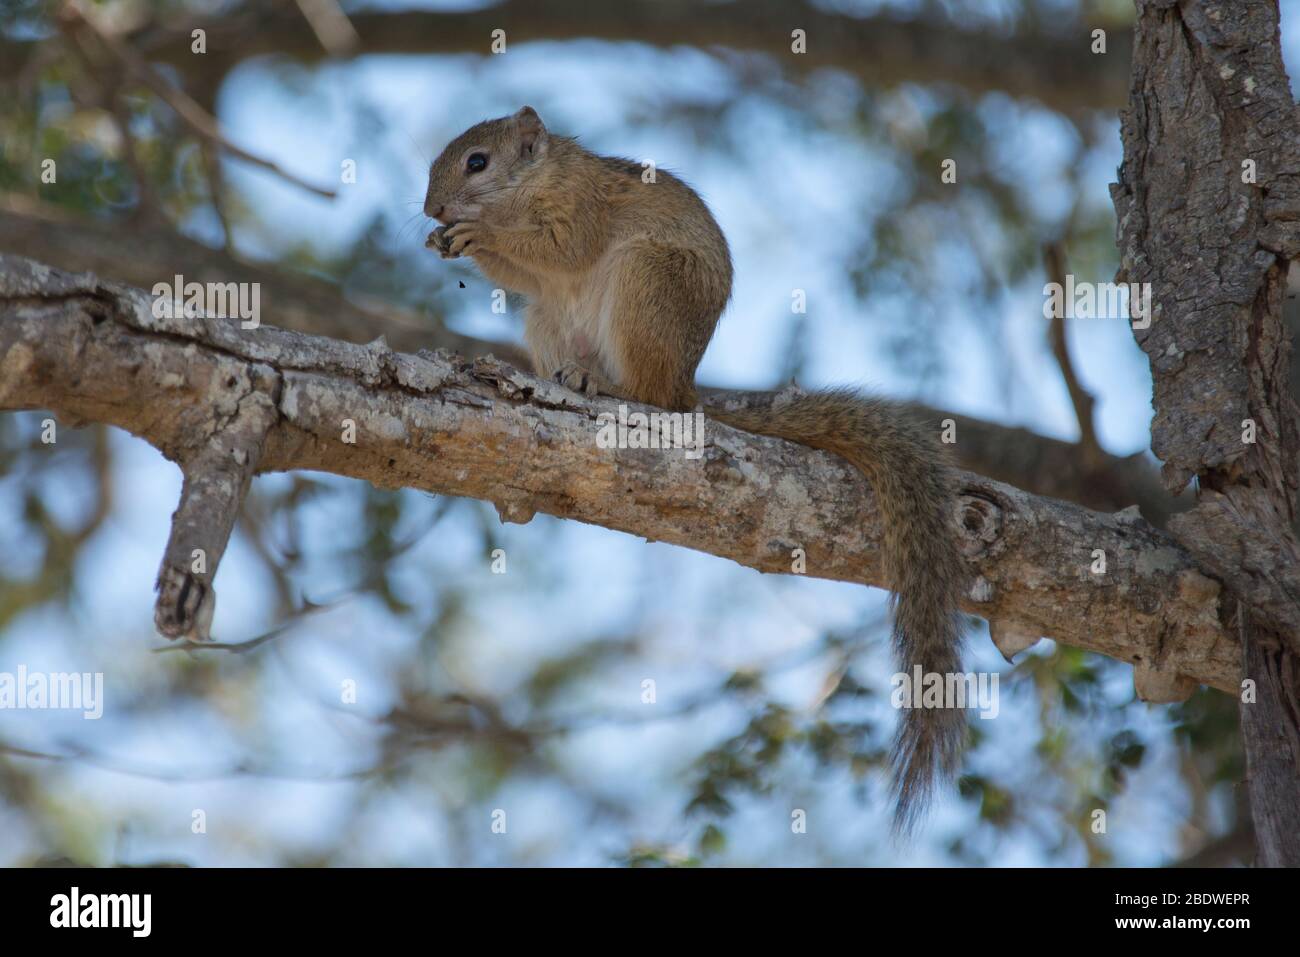 Écureuil d'Afrique du Sud, Xerus inauris, manger sur place, Parc national Kruger, province de Mpumalanga,Afrique du Sud, Afrique Banque D'Images